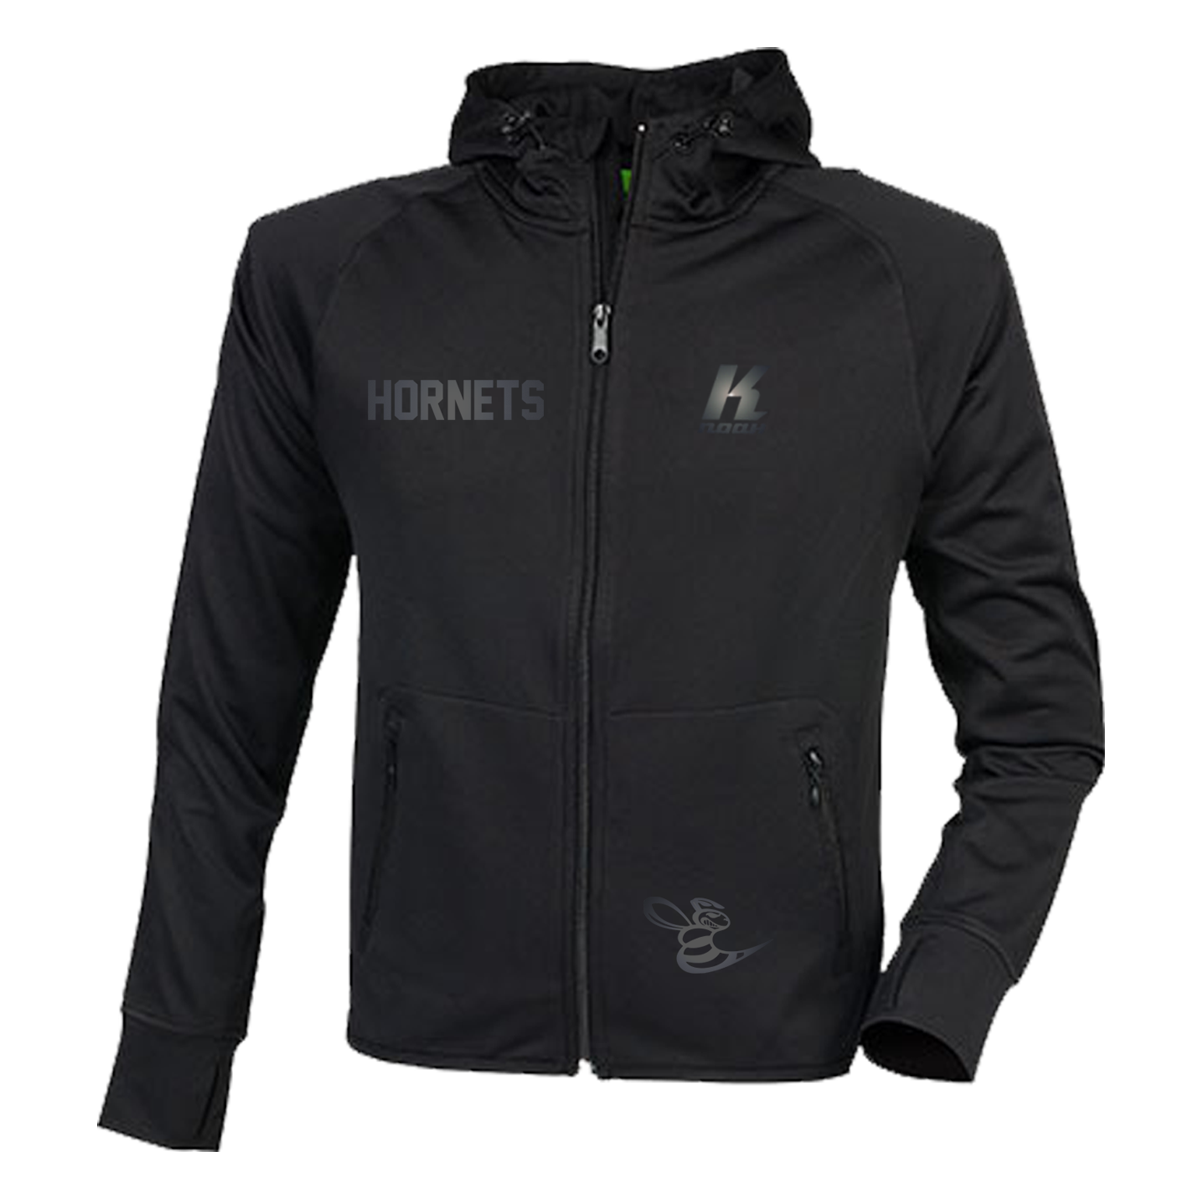 Hornets "Blackline" Zip Hoodie TL550